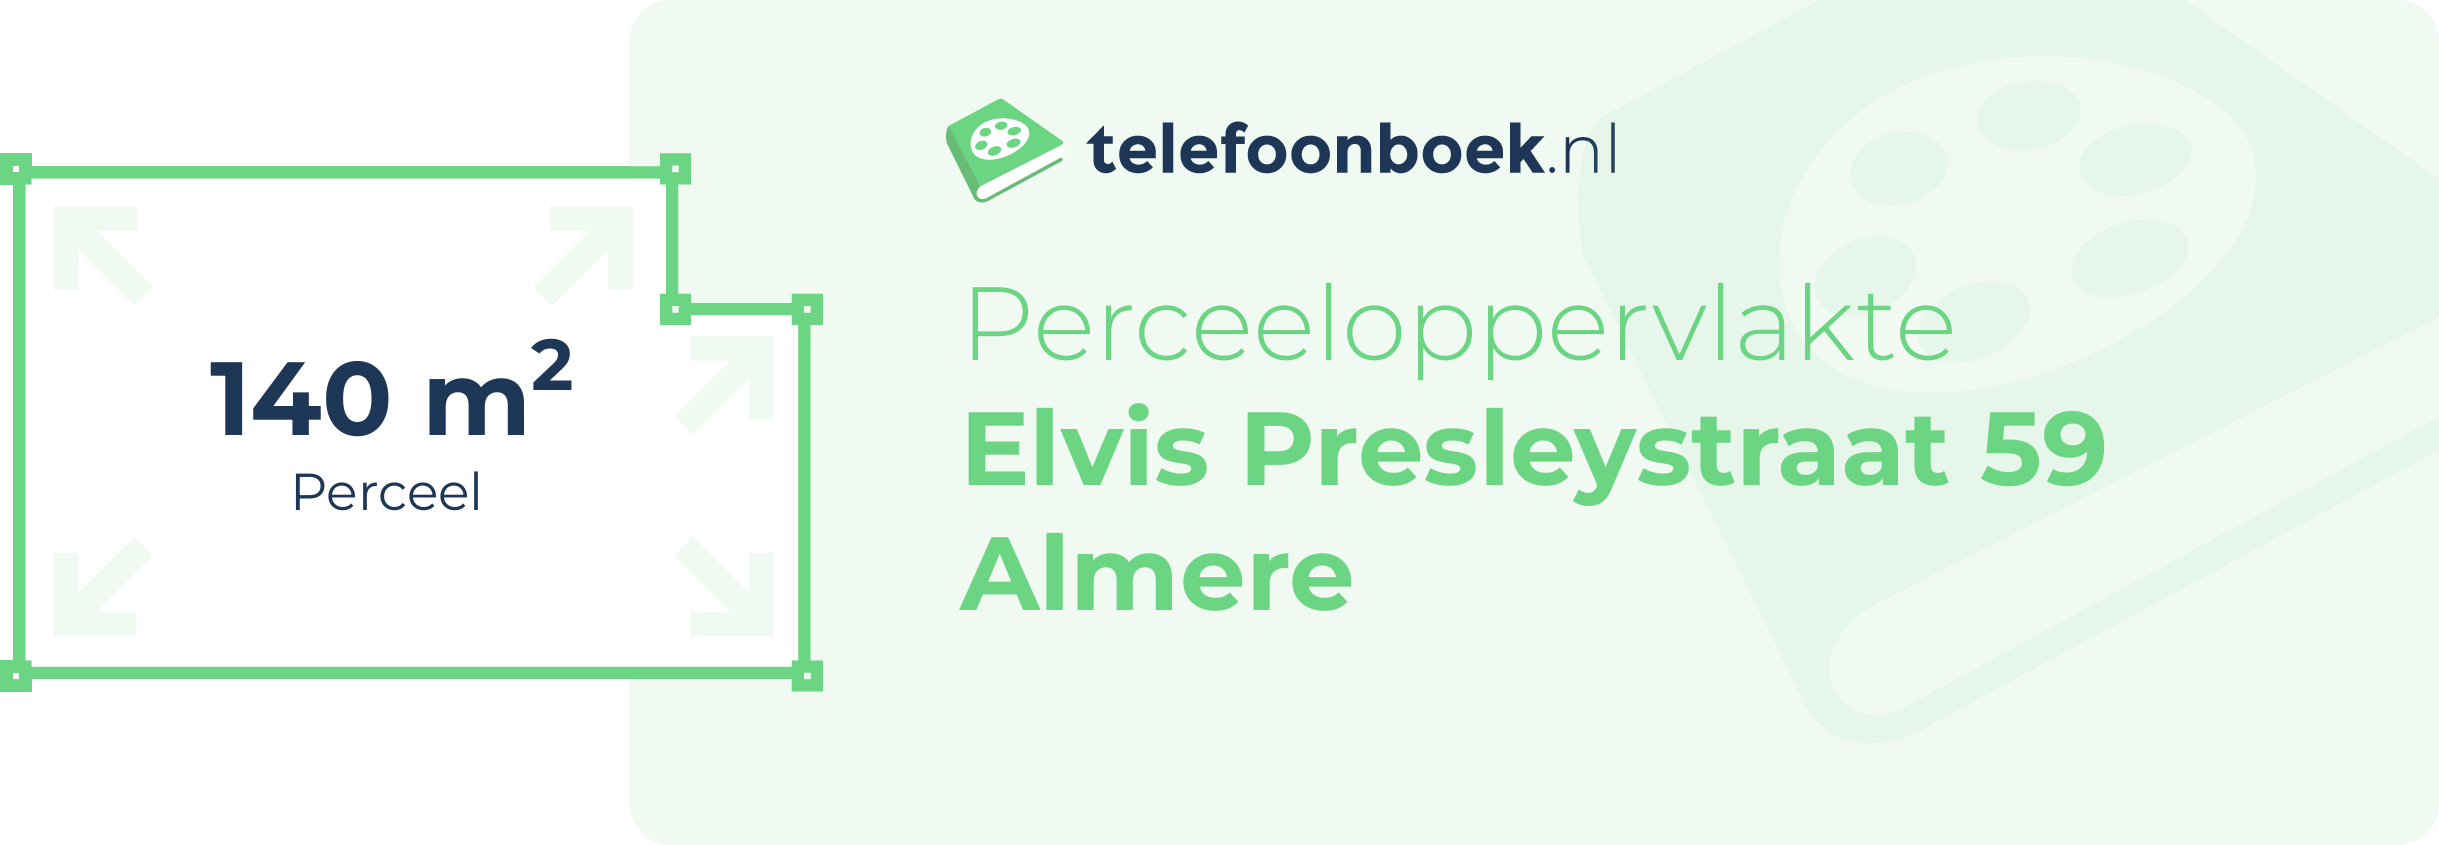 Perceeloppervlakte Elvis Presleystraat 59 Almere